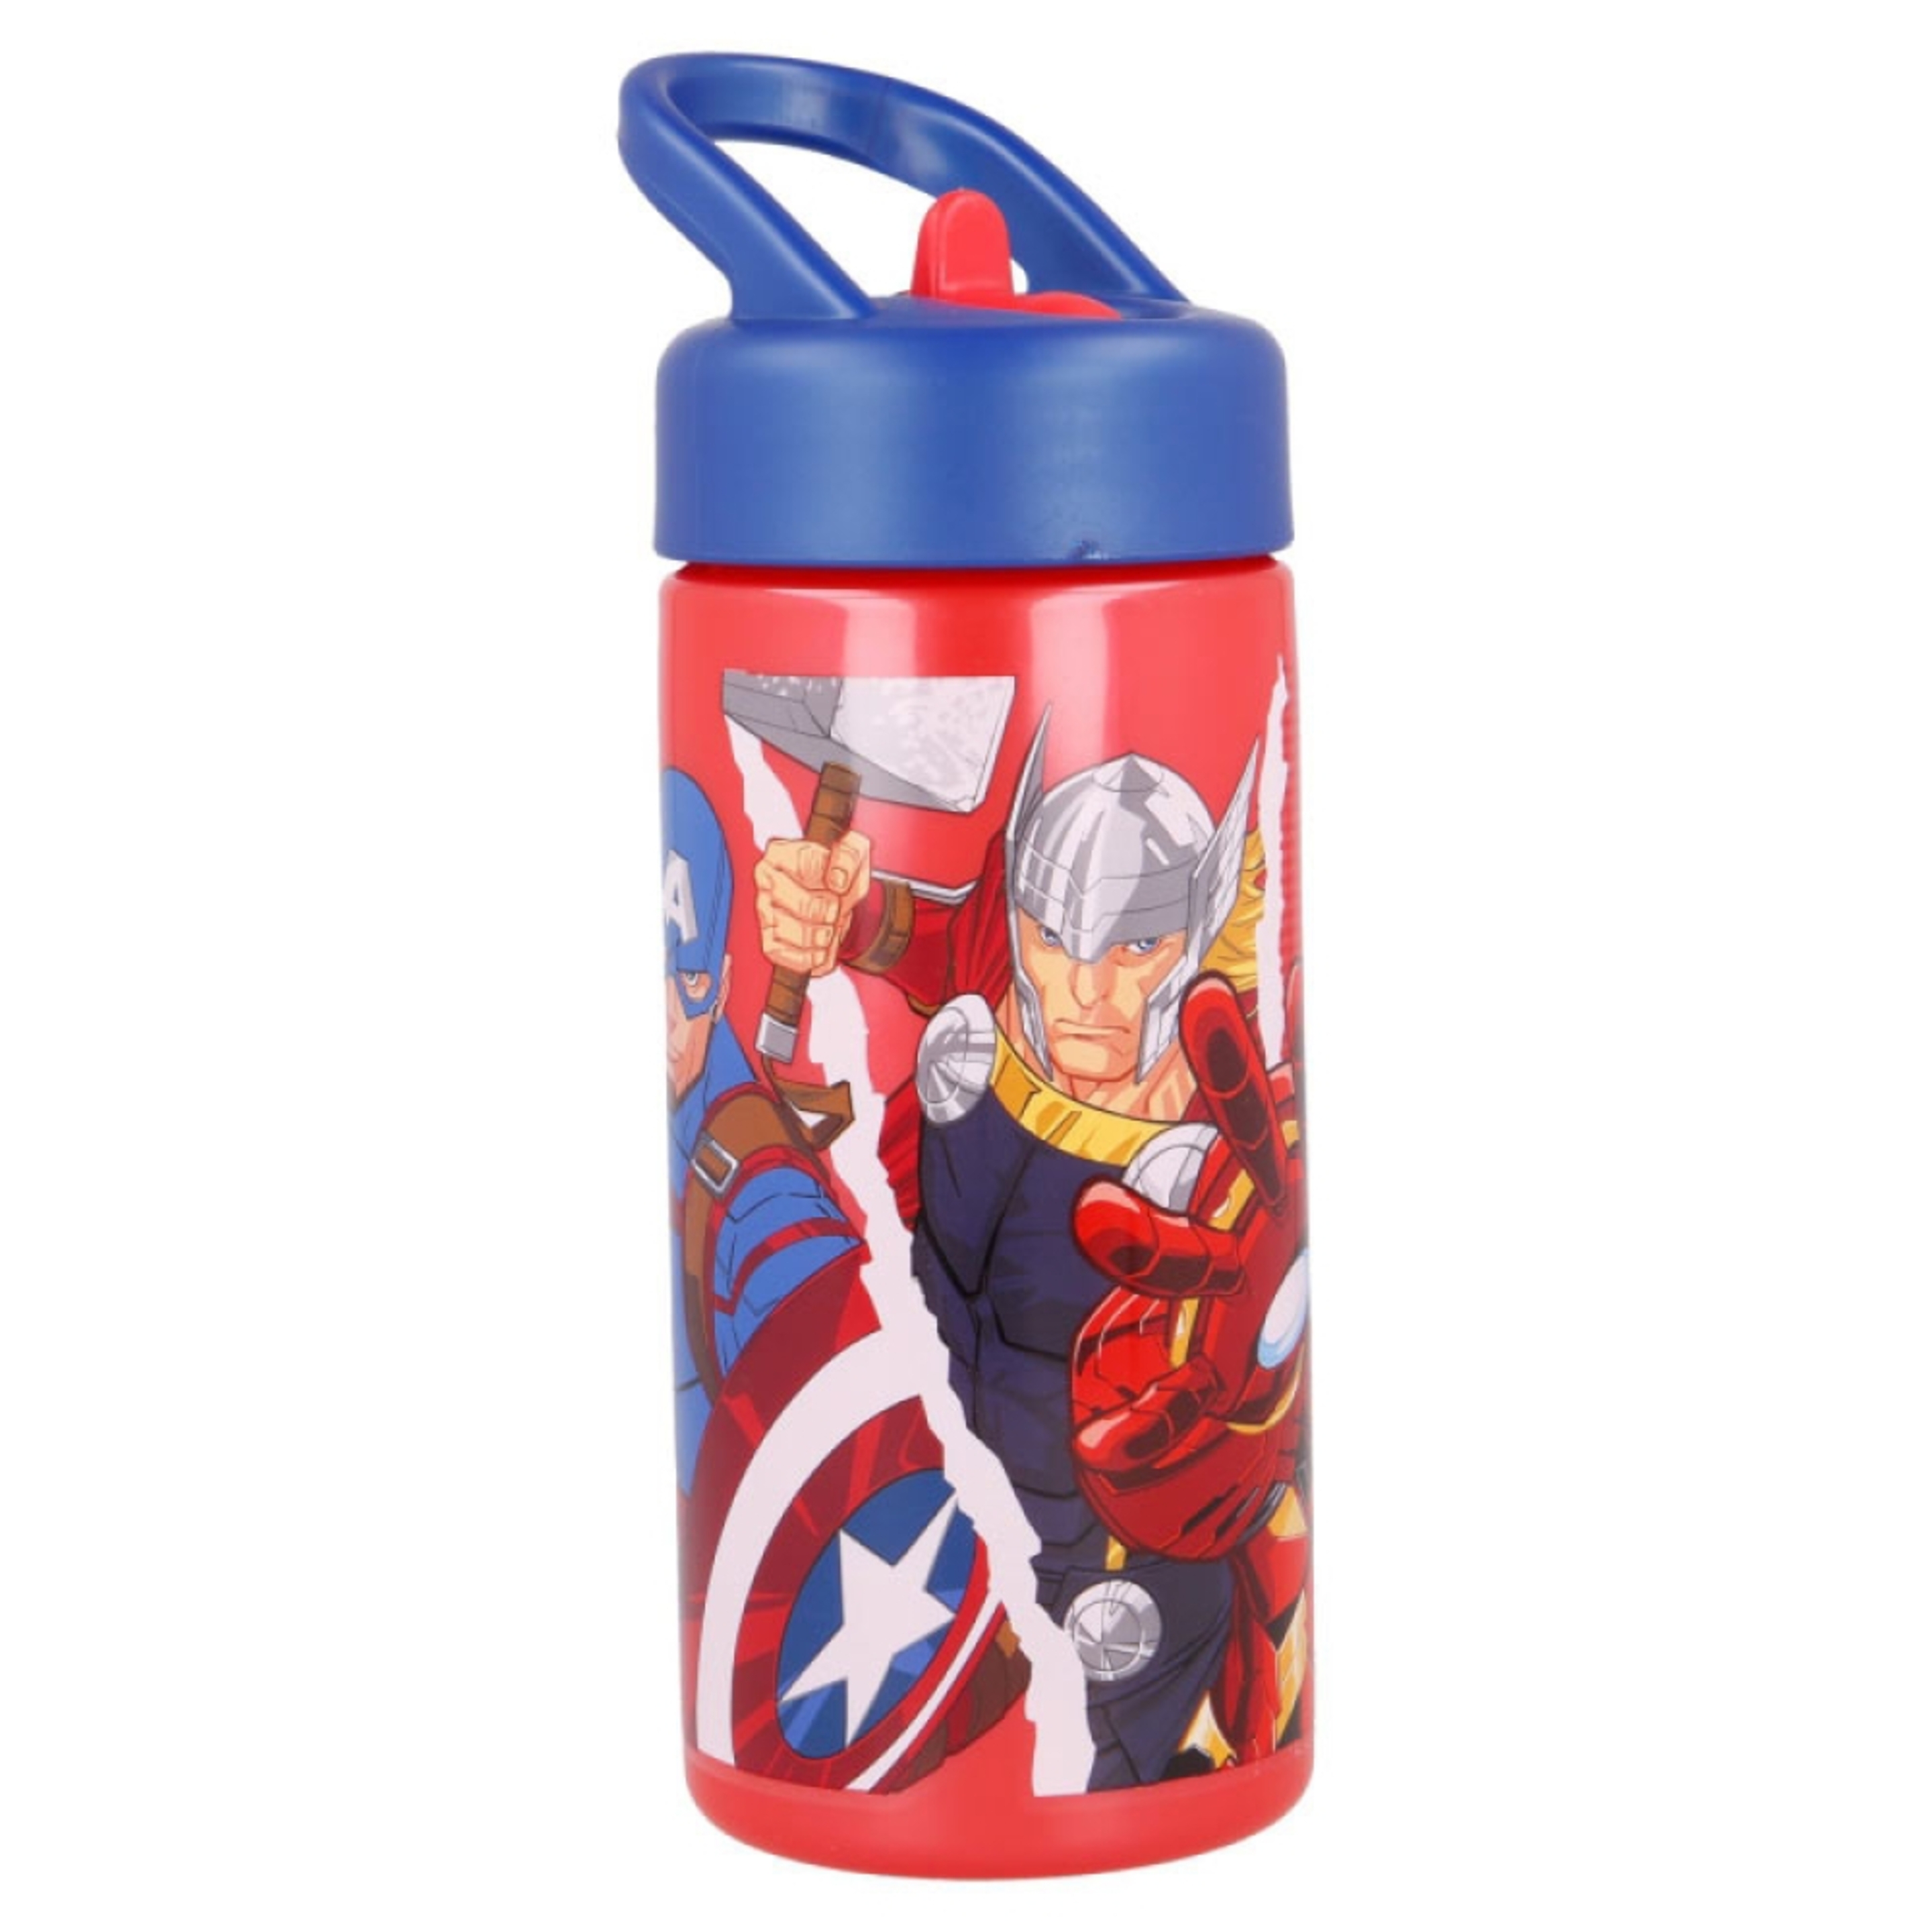 Botella Cantimplora Pajita Avengers 410ml - multicolor - 